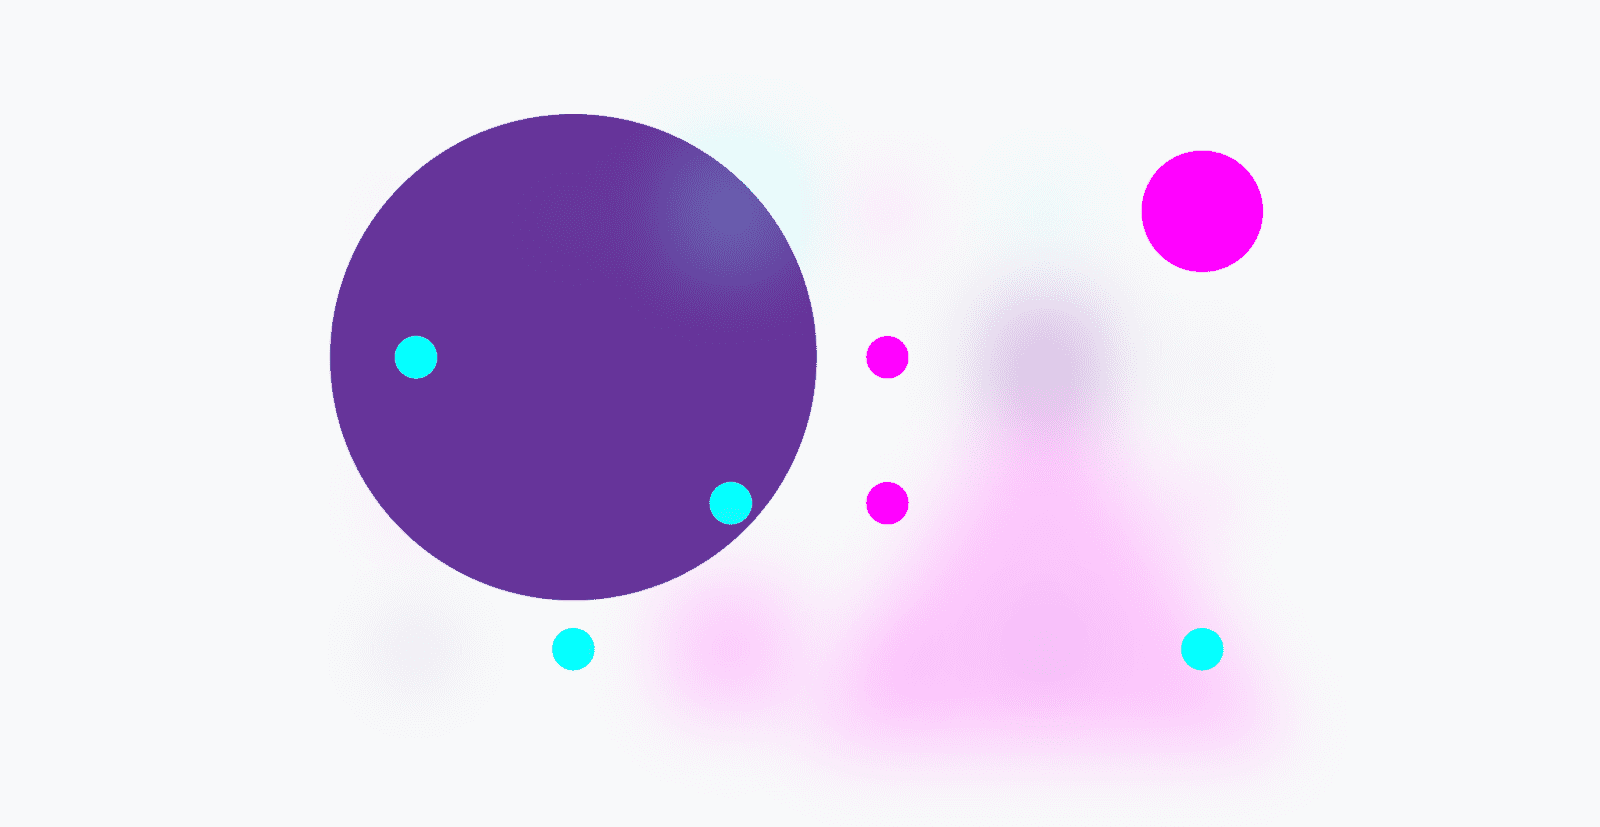 Lưới hình dạng đầy màu sắc chỉ còn lại các hình tròn, tất cả các hình dạng khác gần như không xuất hiện.